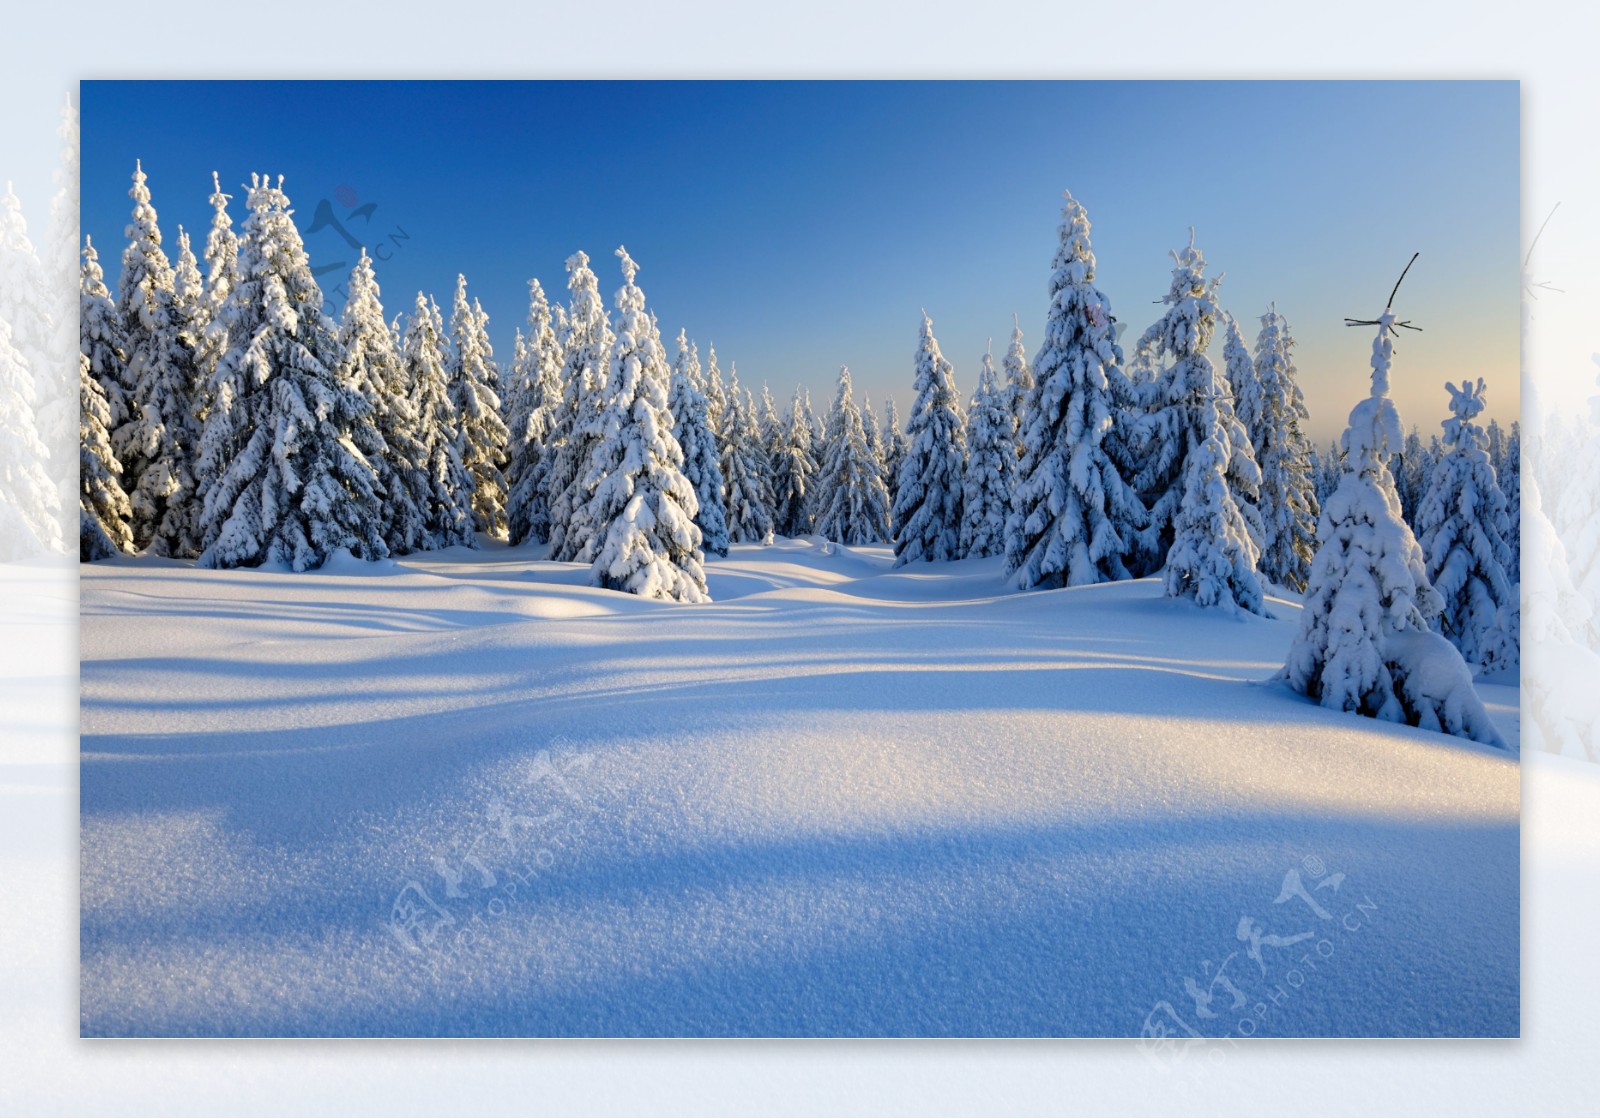 雪地上的松树图片